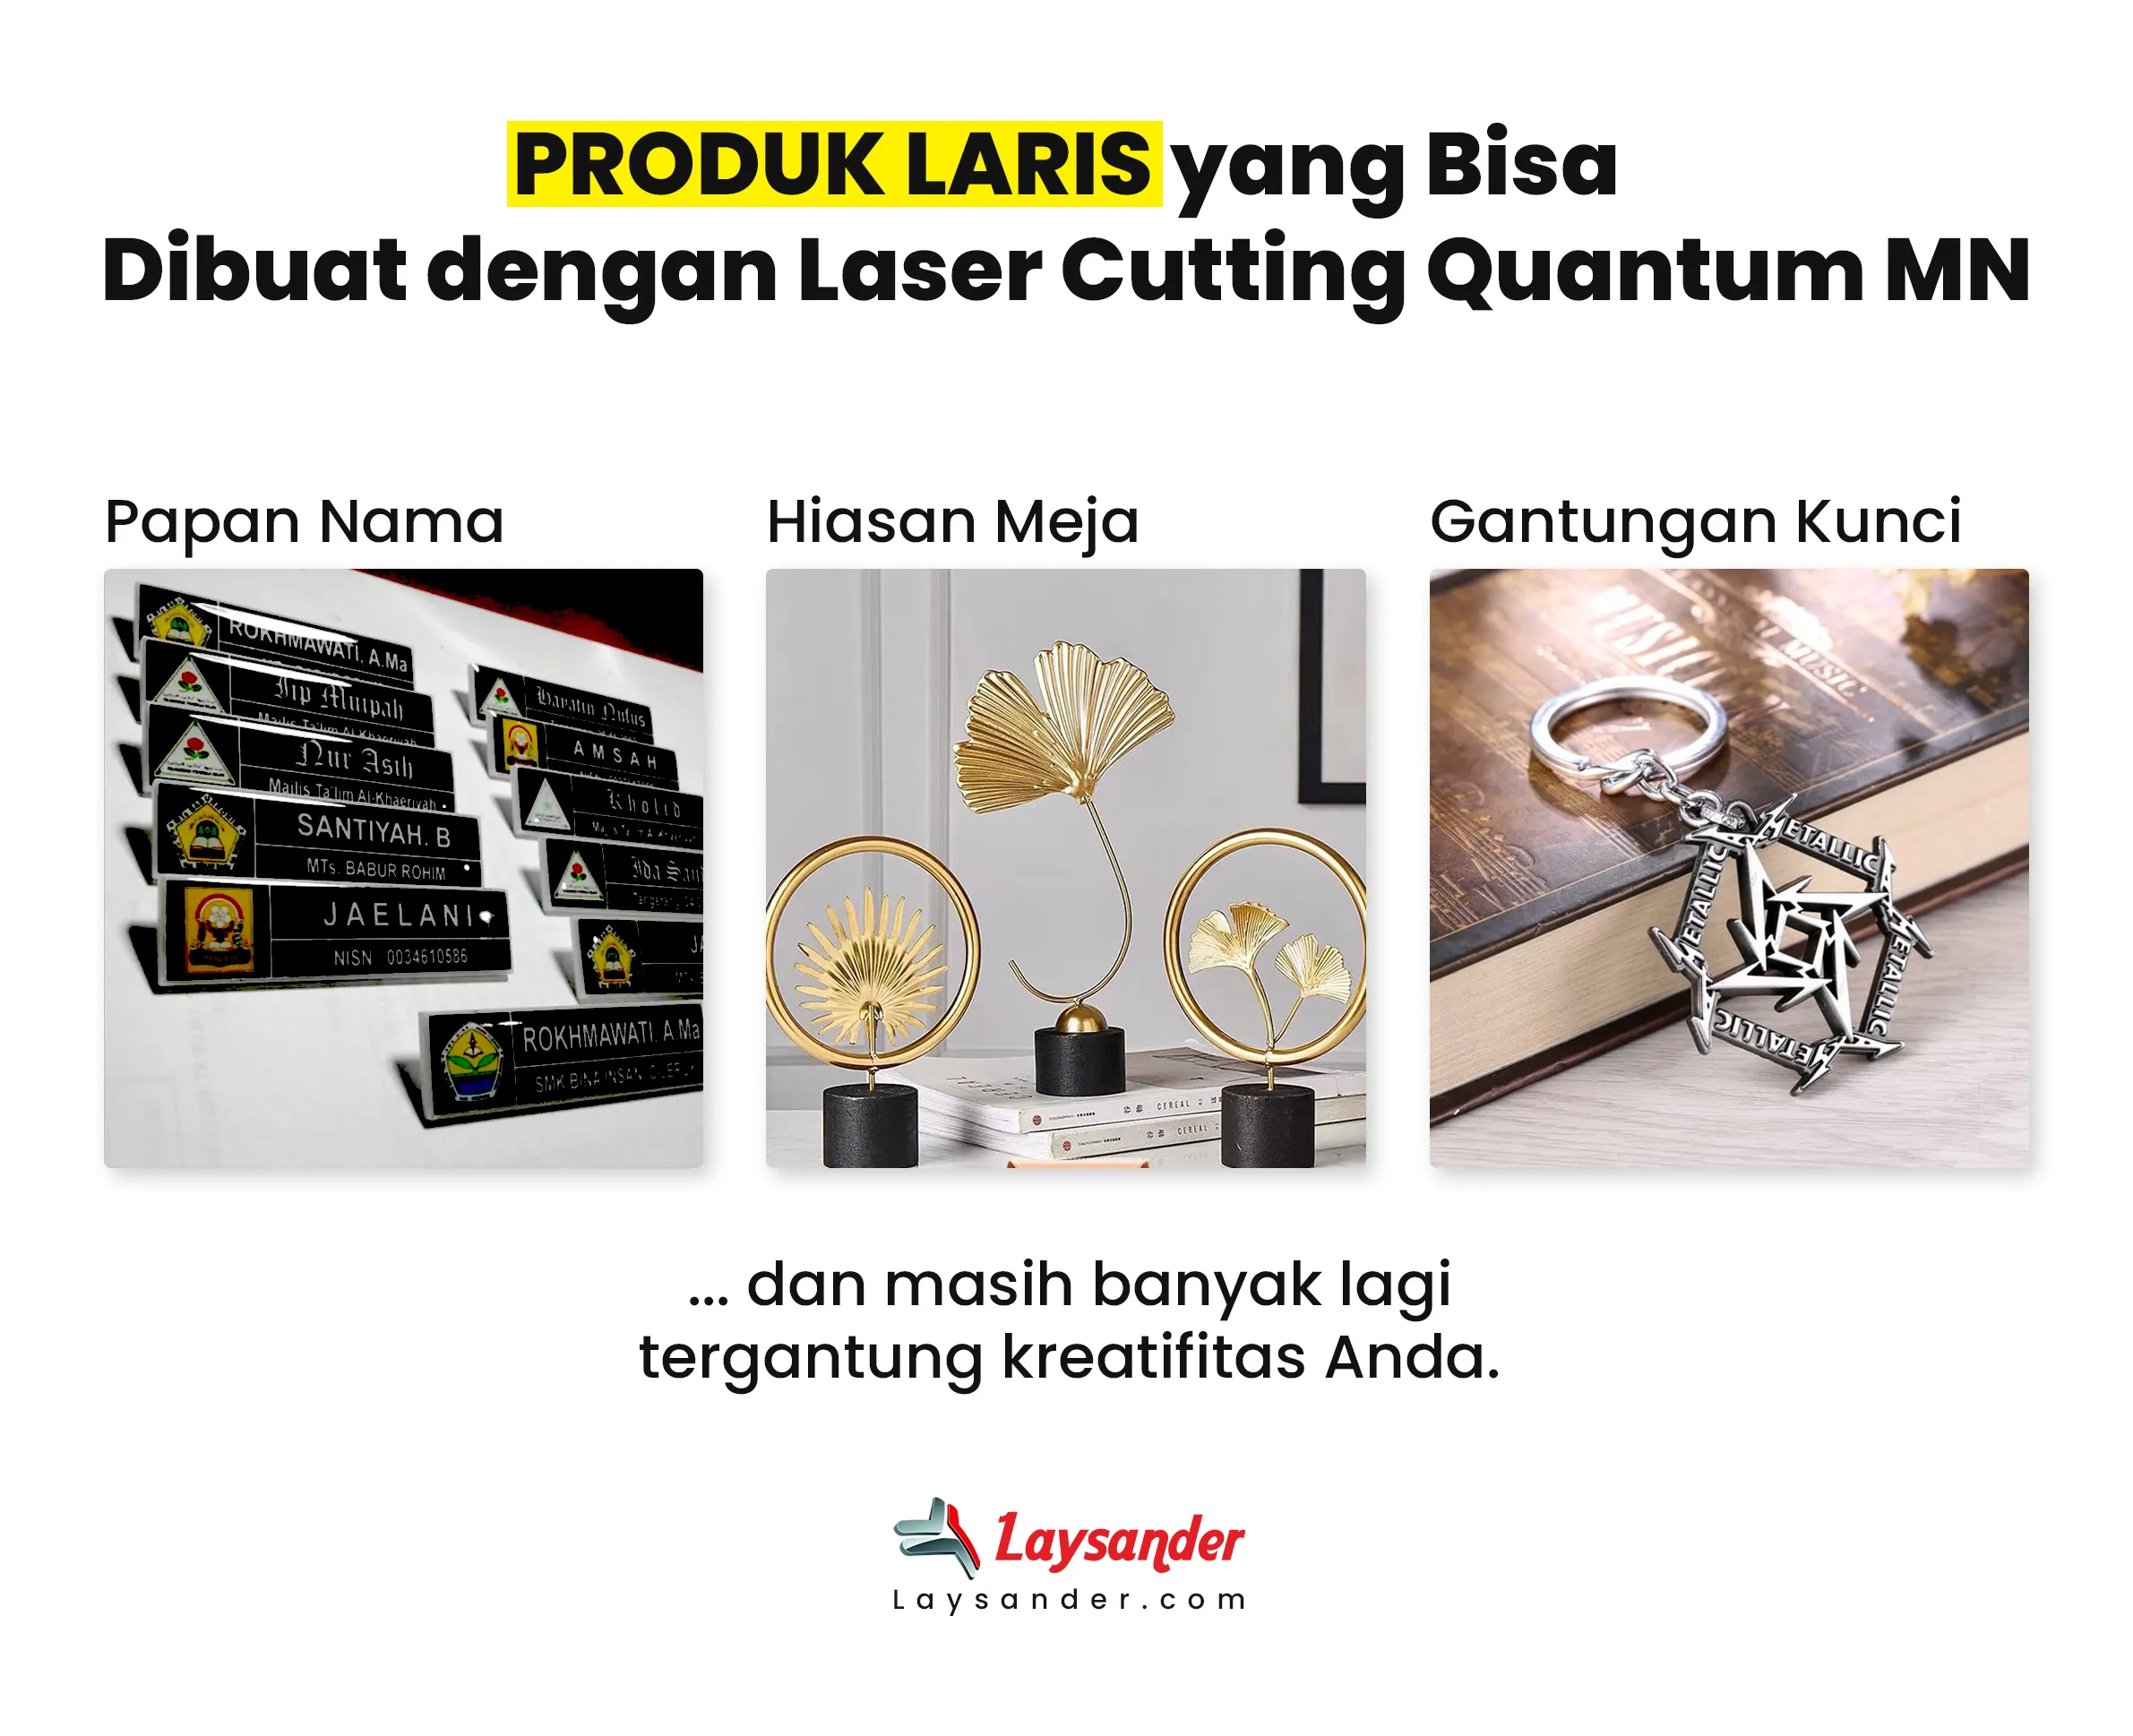 Produk Yang Bisa Diahasilkan Menggunakan Mesin Laser Cutting Quantum Mn - Laysander